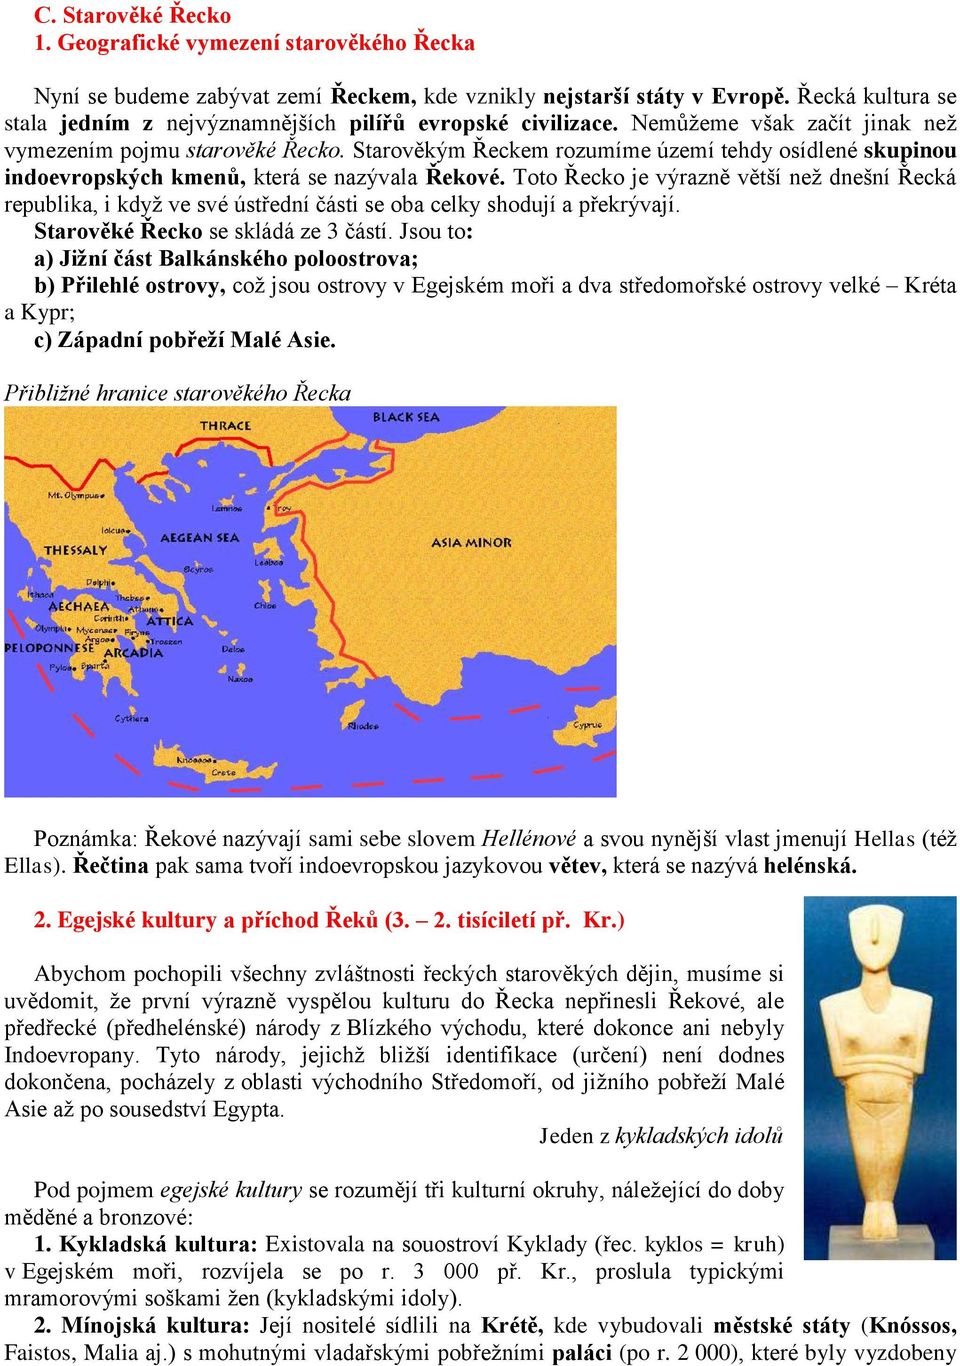 Starověkým Řeckem rozumíme území tehdy osídlené skupinou indoevropských kmenů, která se nazývala Řekové.